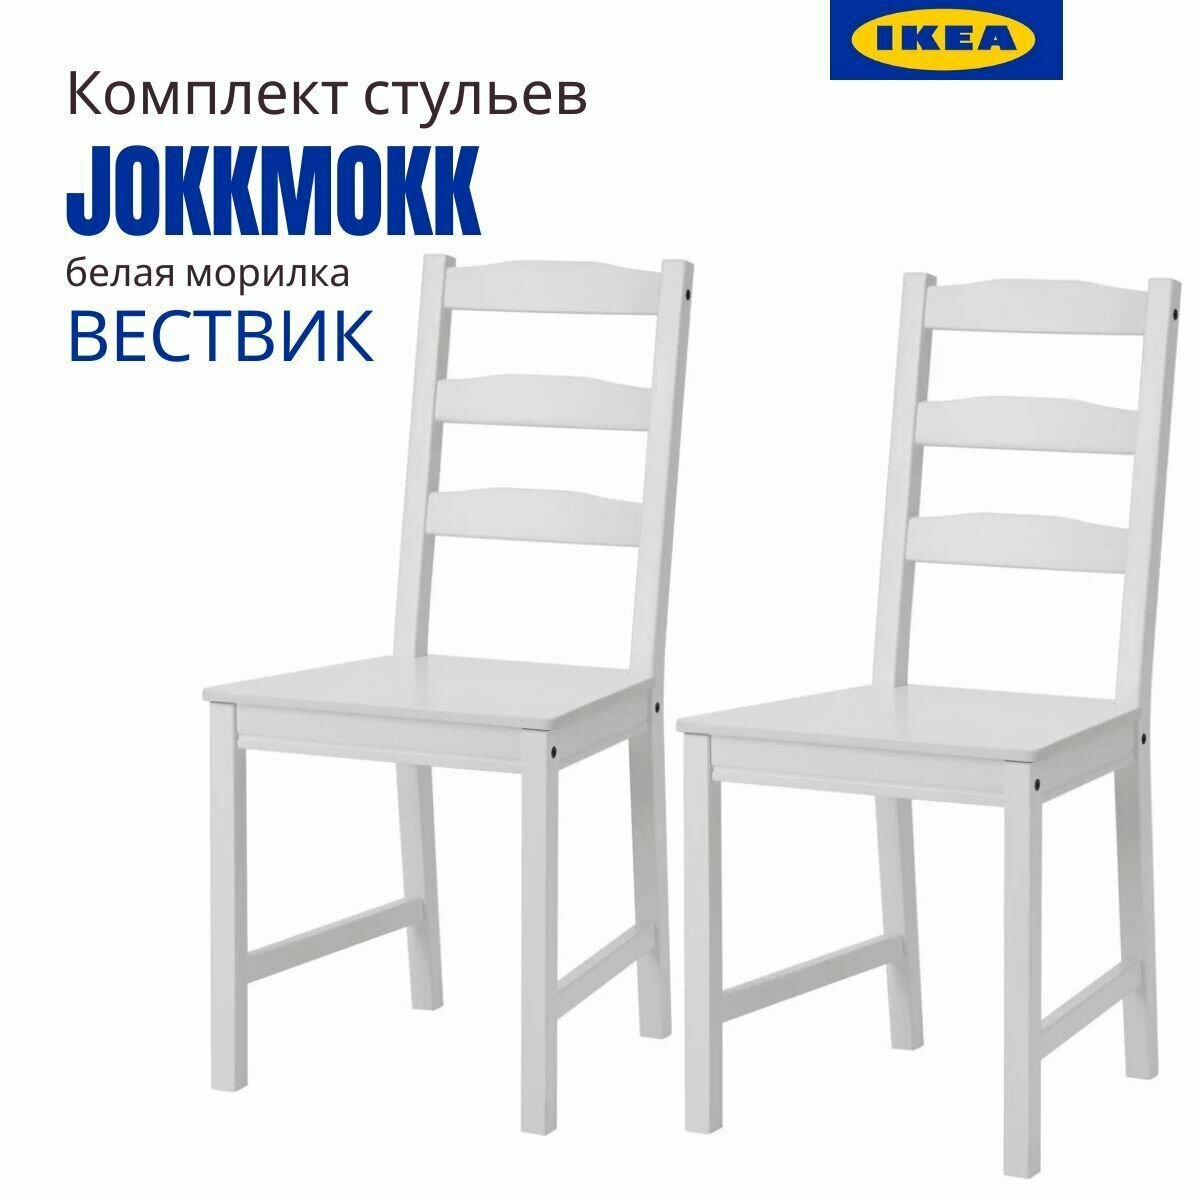 Стул Йокмокк IKEA (Вествик). Стулья для кухни. Деревянные стулья для кухни. Белая морилка 2 шт.